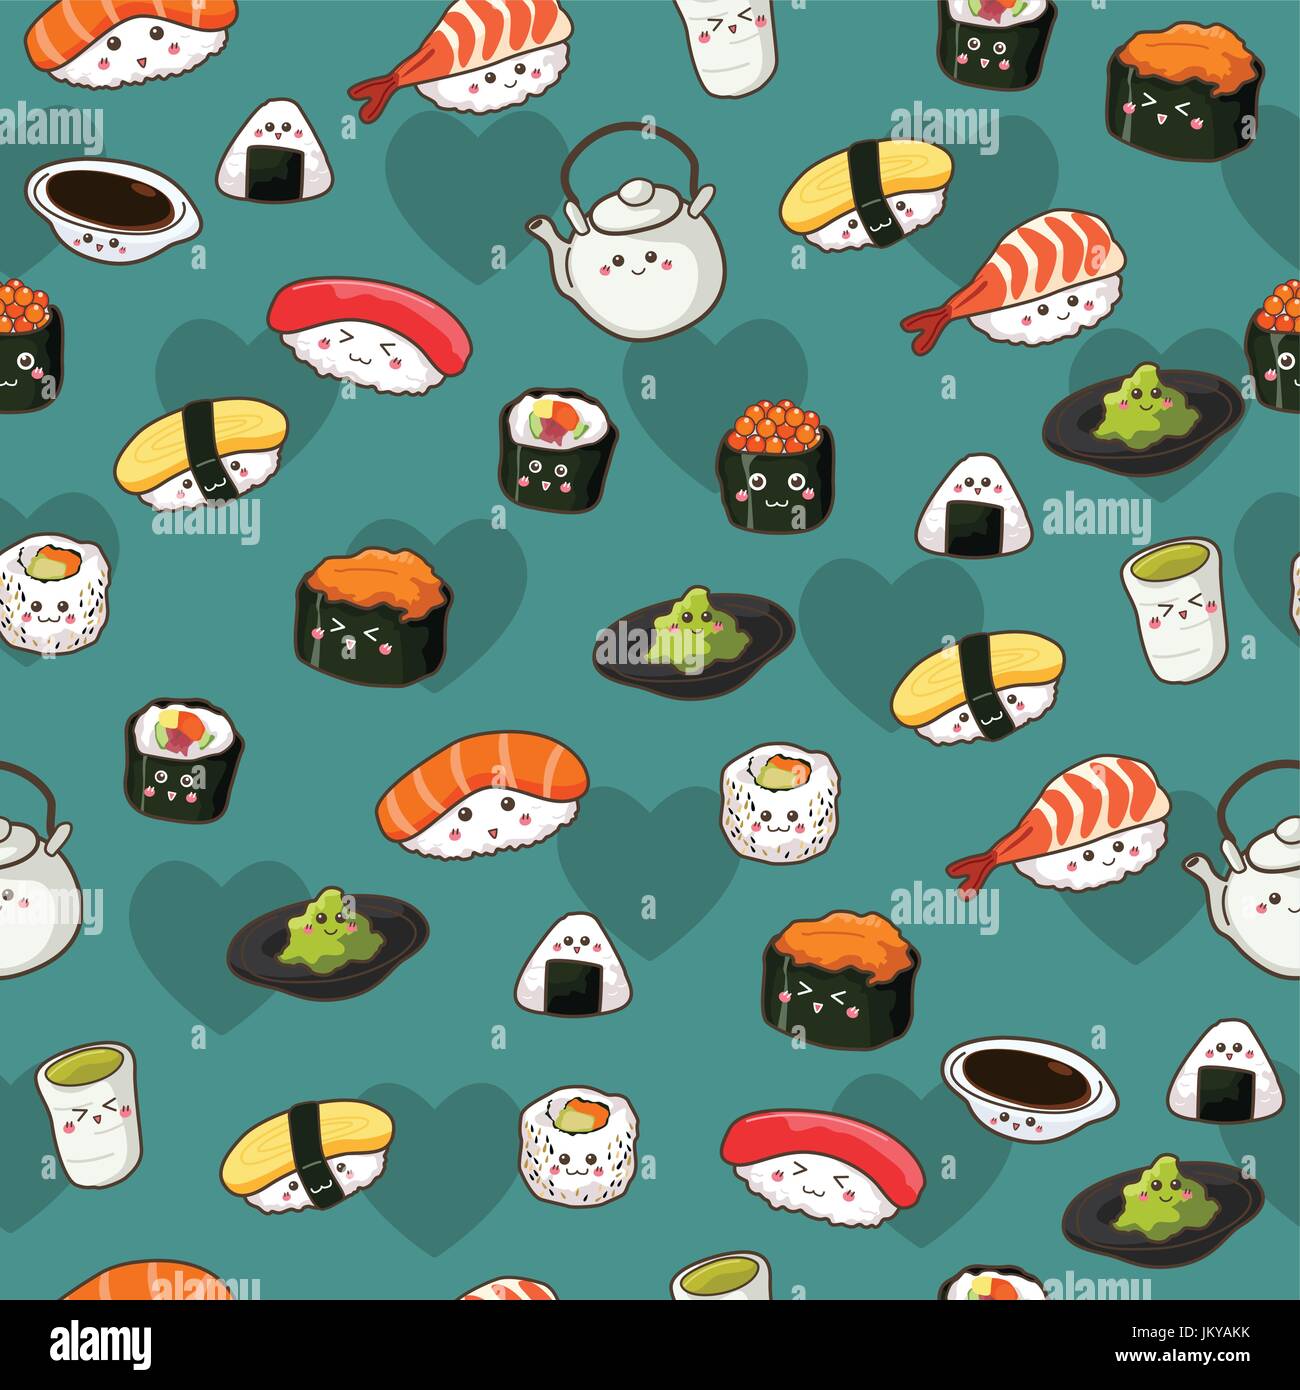 Cute Sushi Wallpaper